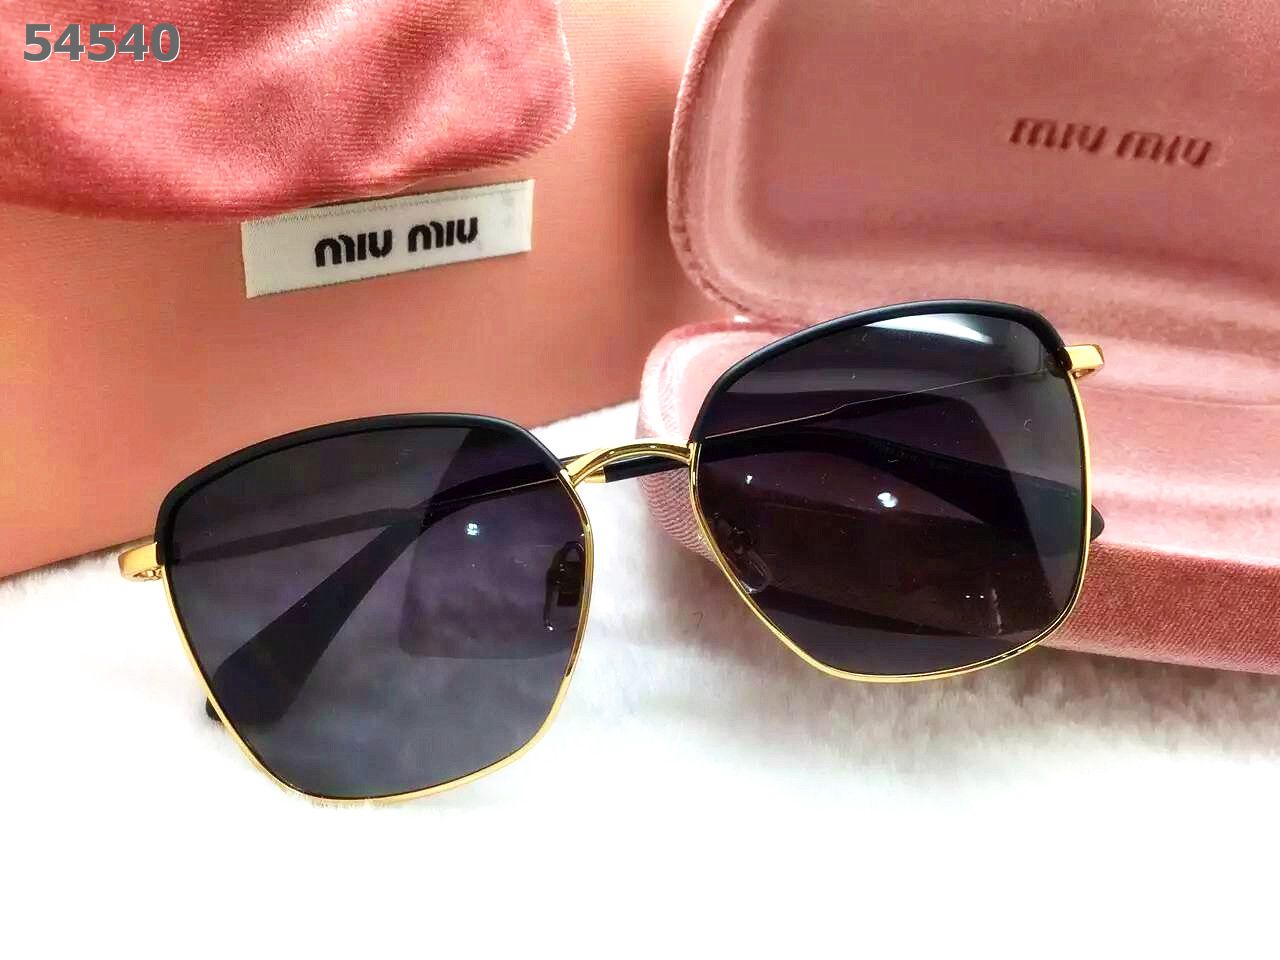 Miu Miu Sunglasses AAAA-659